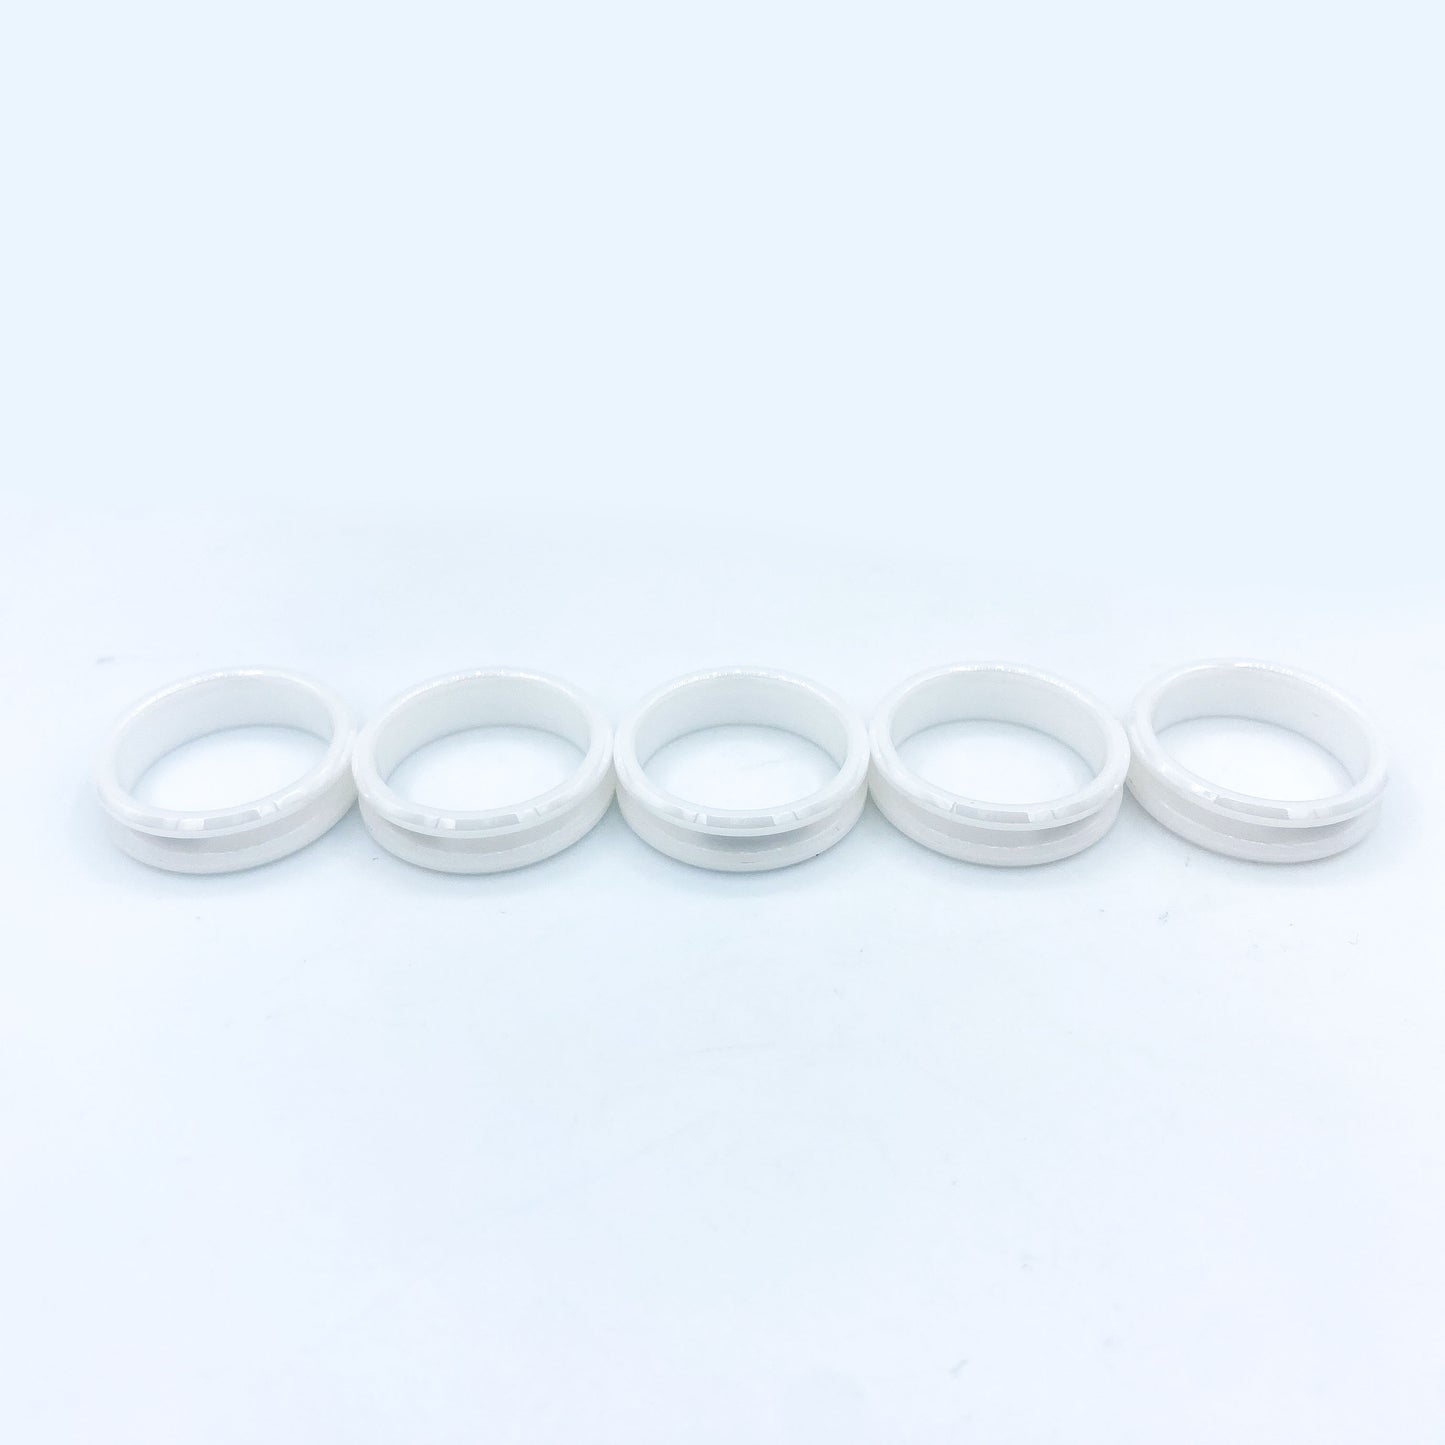 5 Pack - White Ceramic Ring Blank - Patrick Adair Supplies